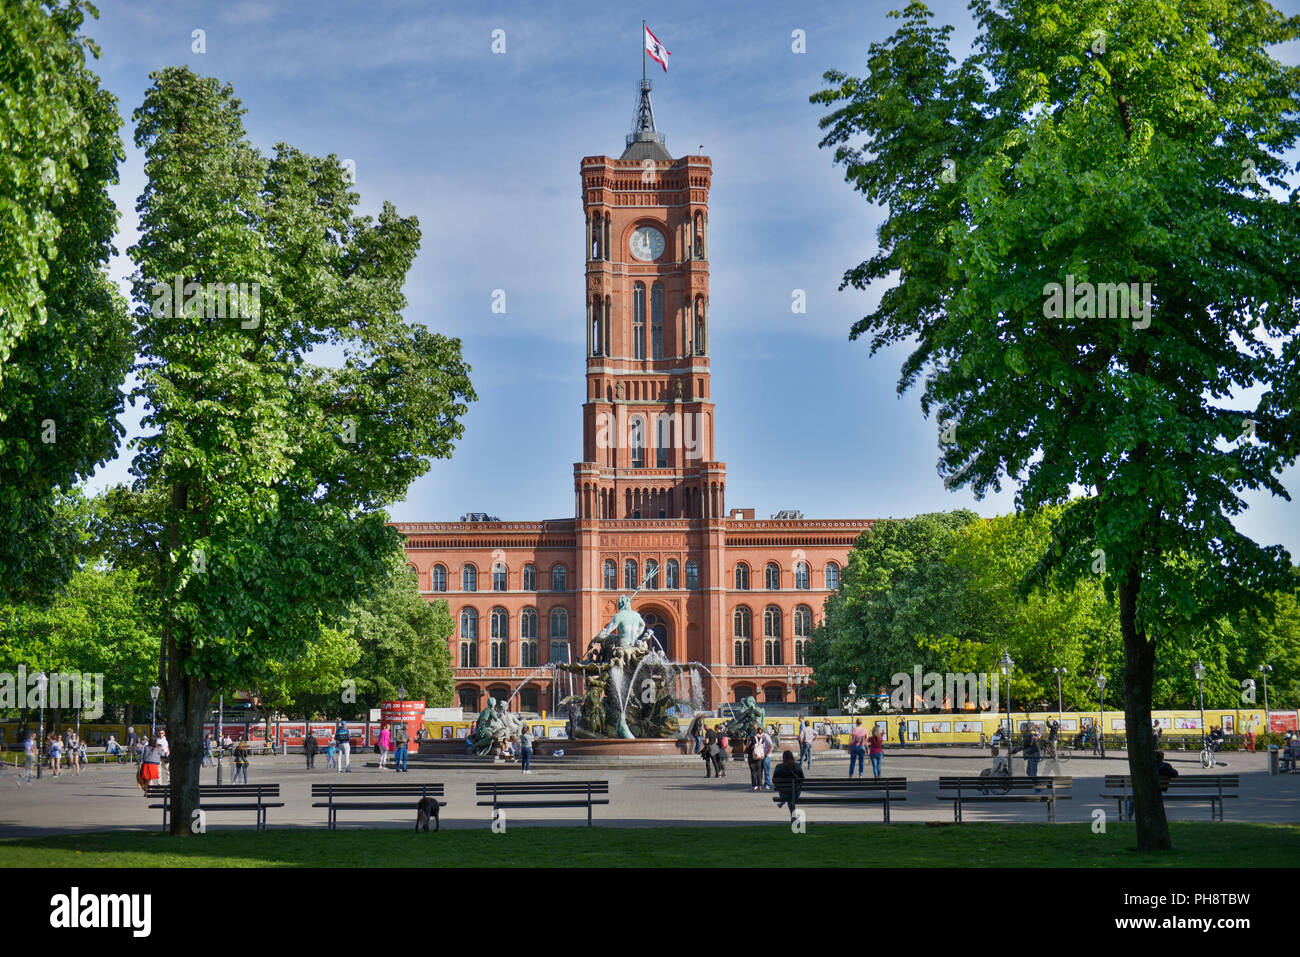 Neptunbrunnen, Rotes Rathaus, Rathaustrasse, Mitte, Berlin, Deutschland Foto de stock